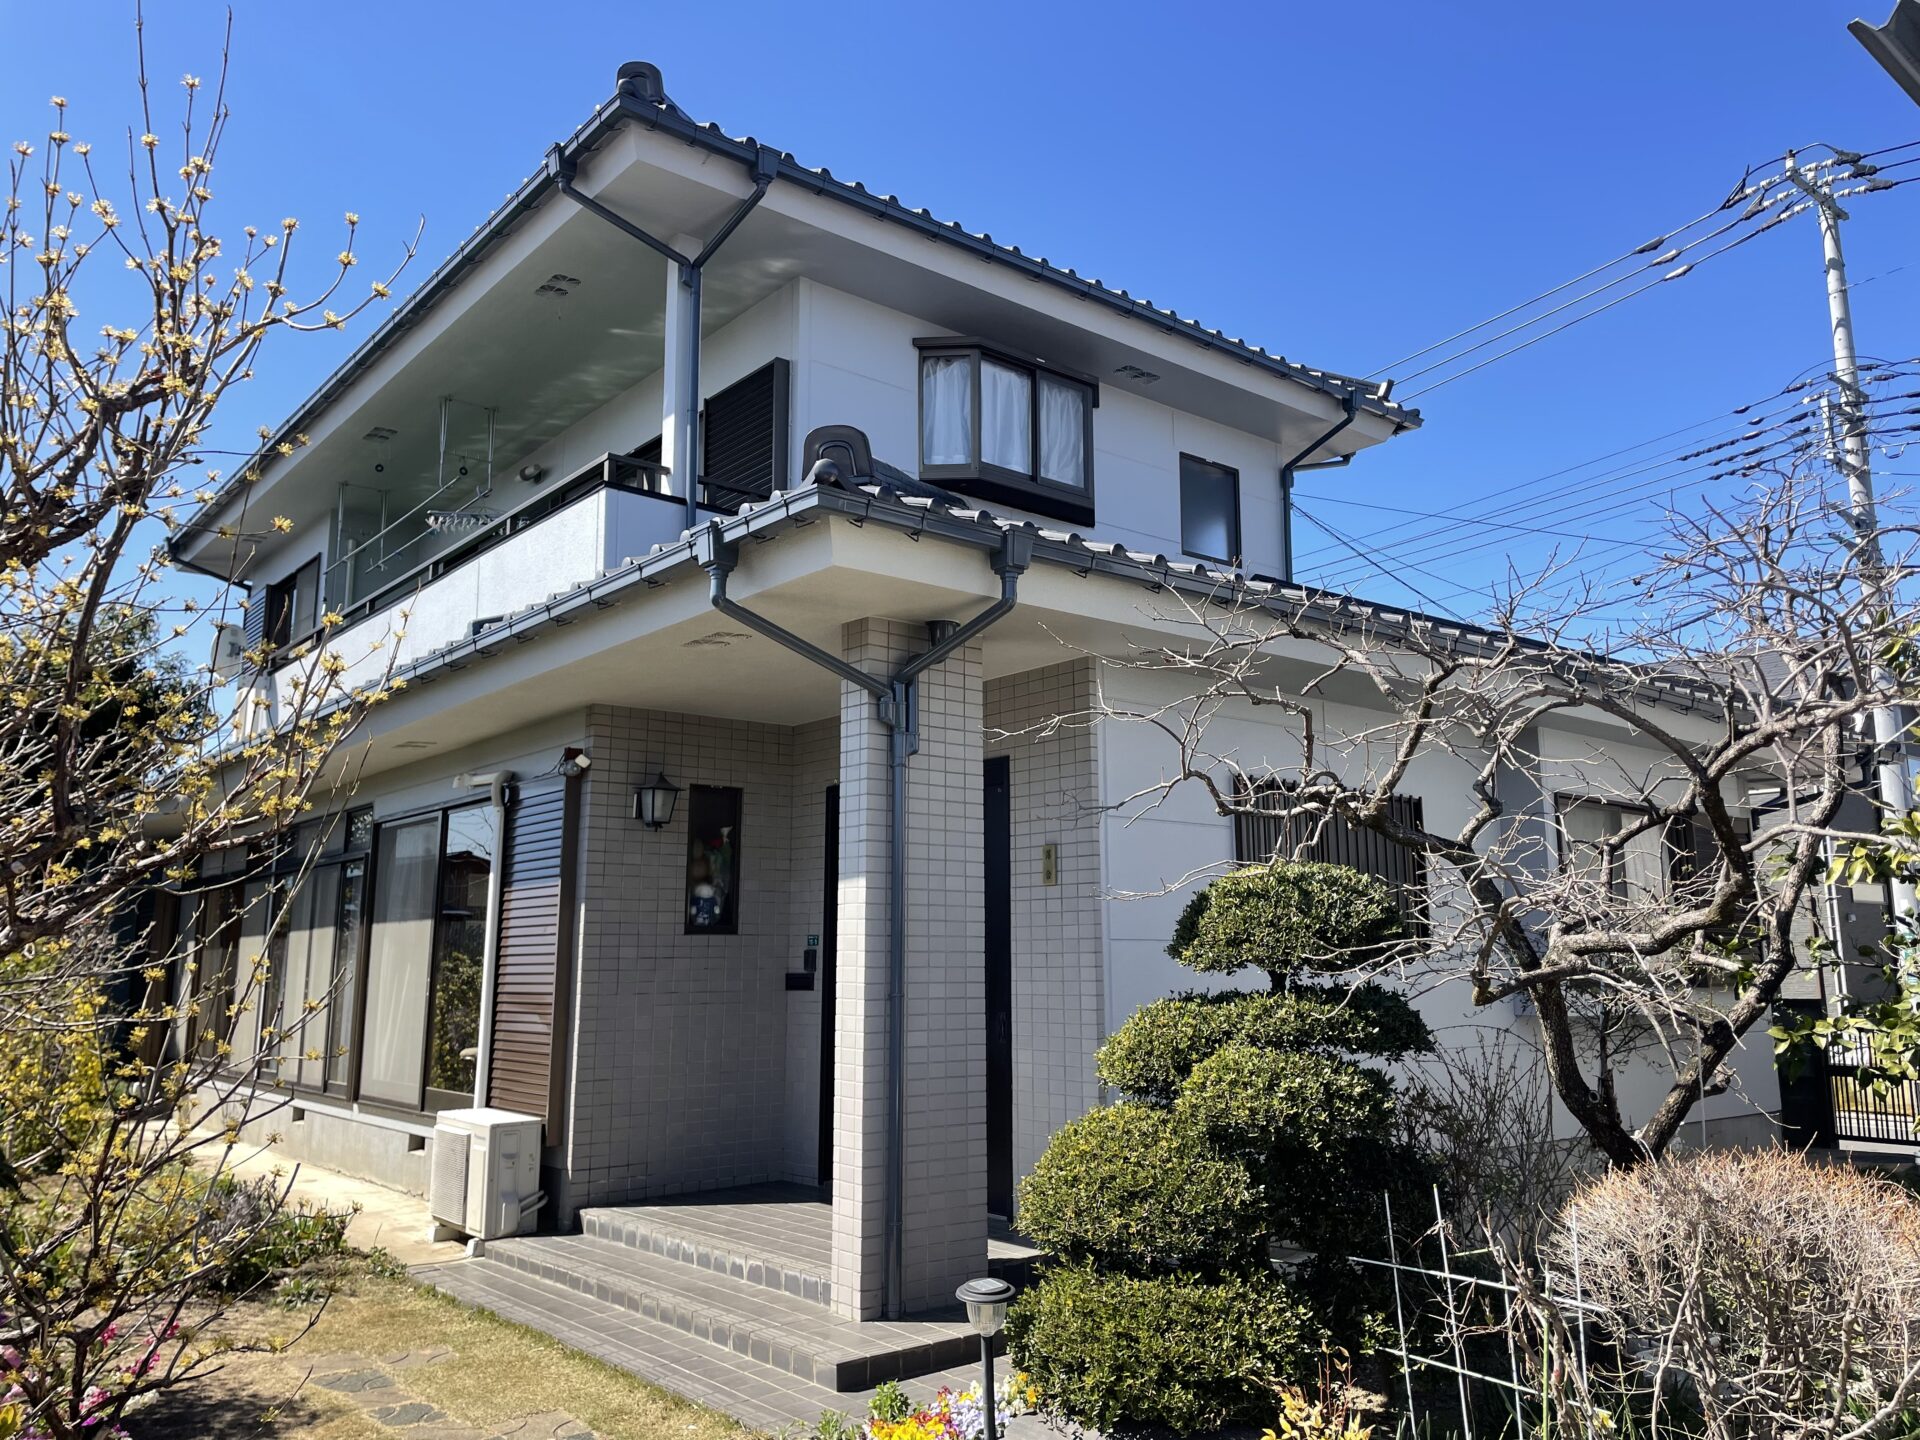 埼玉県川越市で母屋の外壁と倉庫をグレー色で統一して落ち着いた雰囲気のお家になりました。施工後